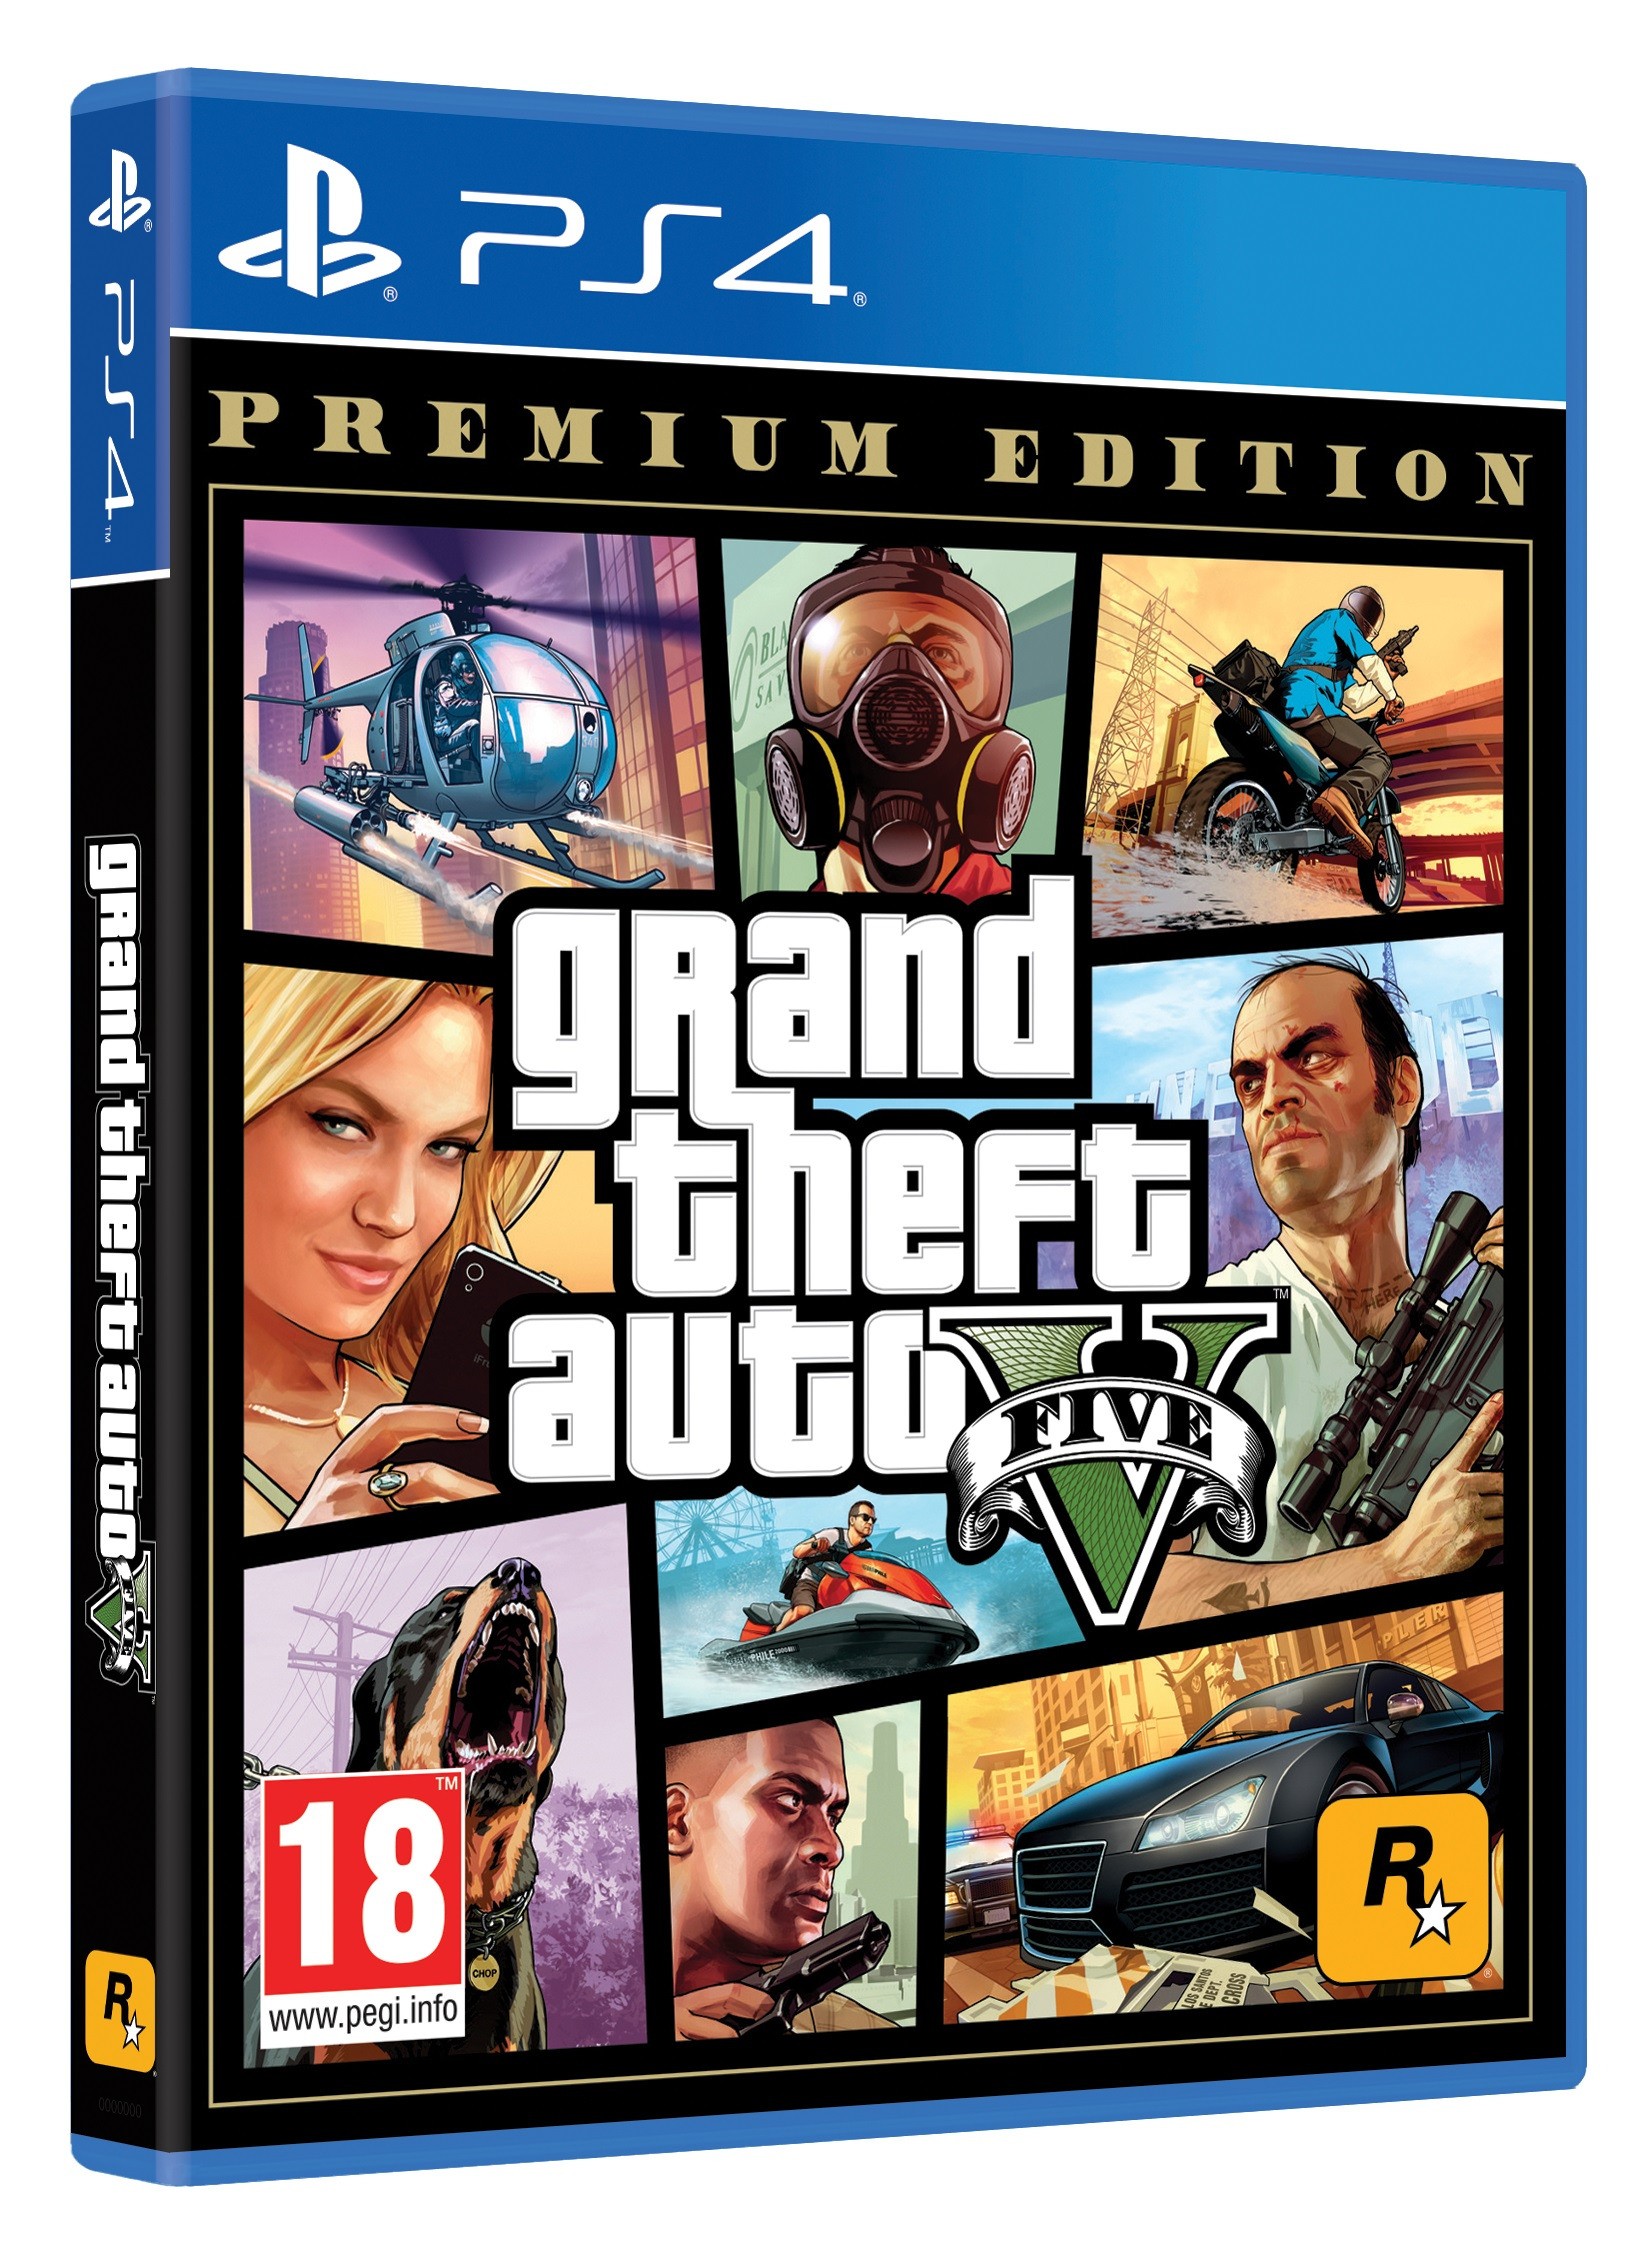 Ps4 premium. Grand Theft auto v (GTA 5) Premium Edition (ps4). Диск GTA 5 на PLAYSTATION 4. GTA 5 Premium Edition ps4. Игра Grant Theft auto 5 Premium Edition для ps4.